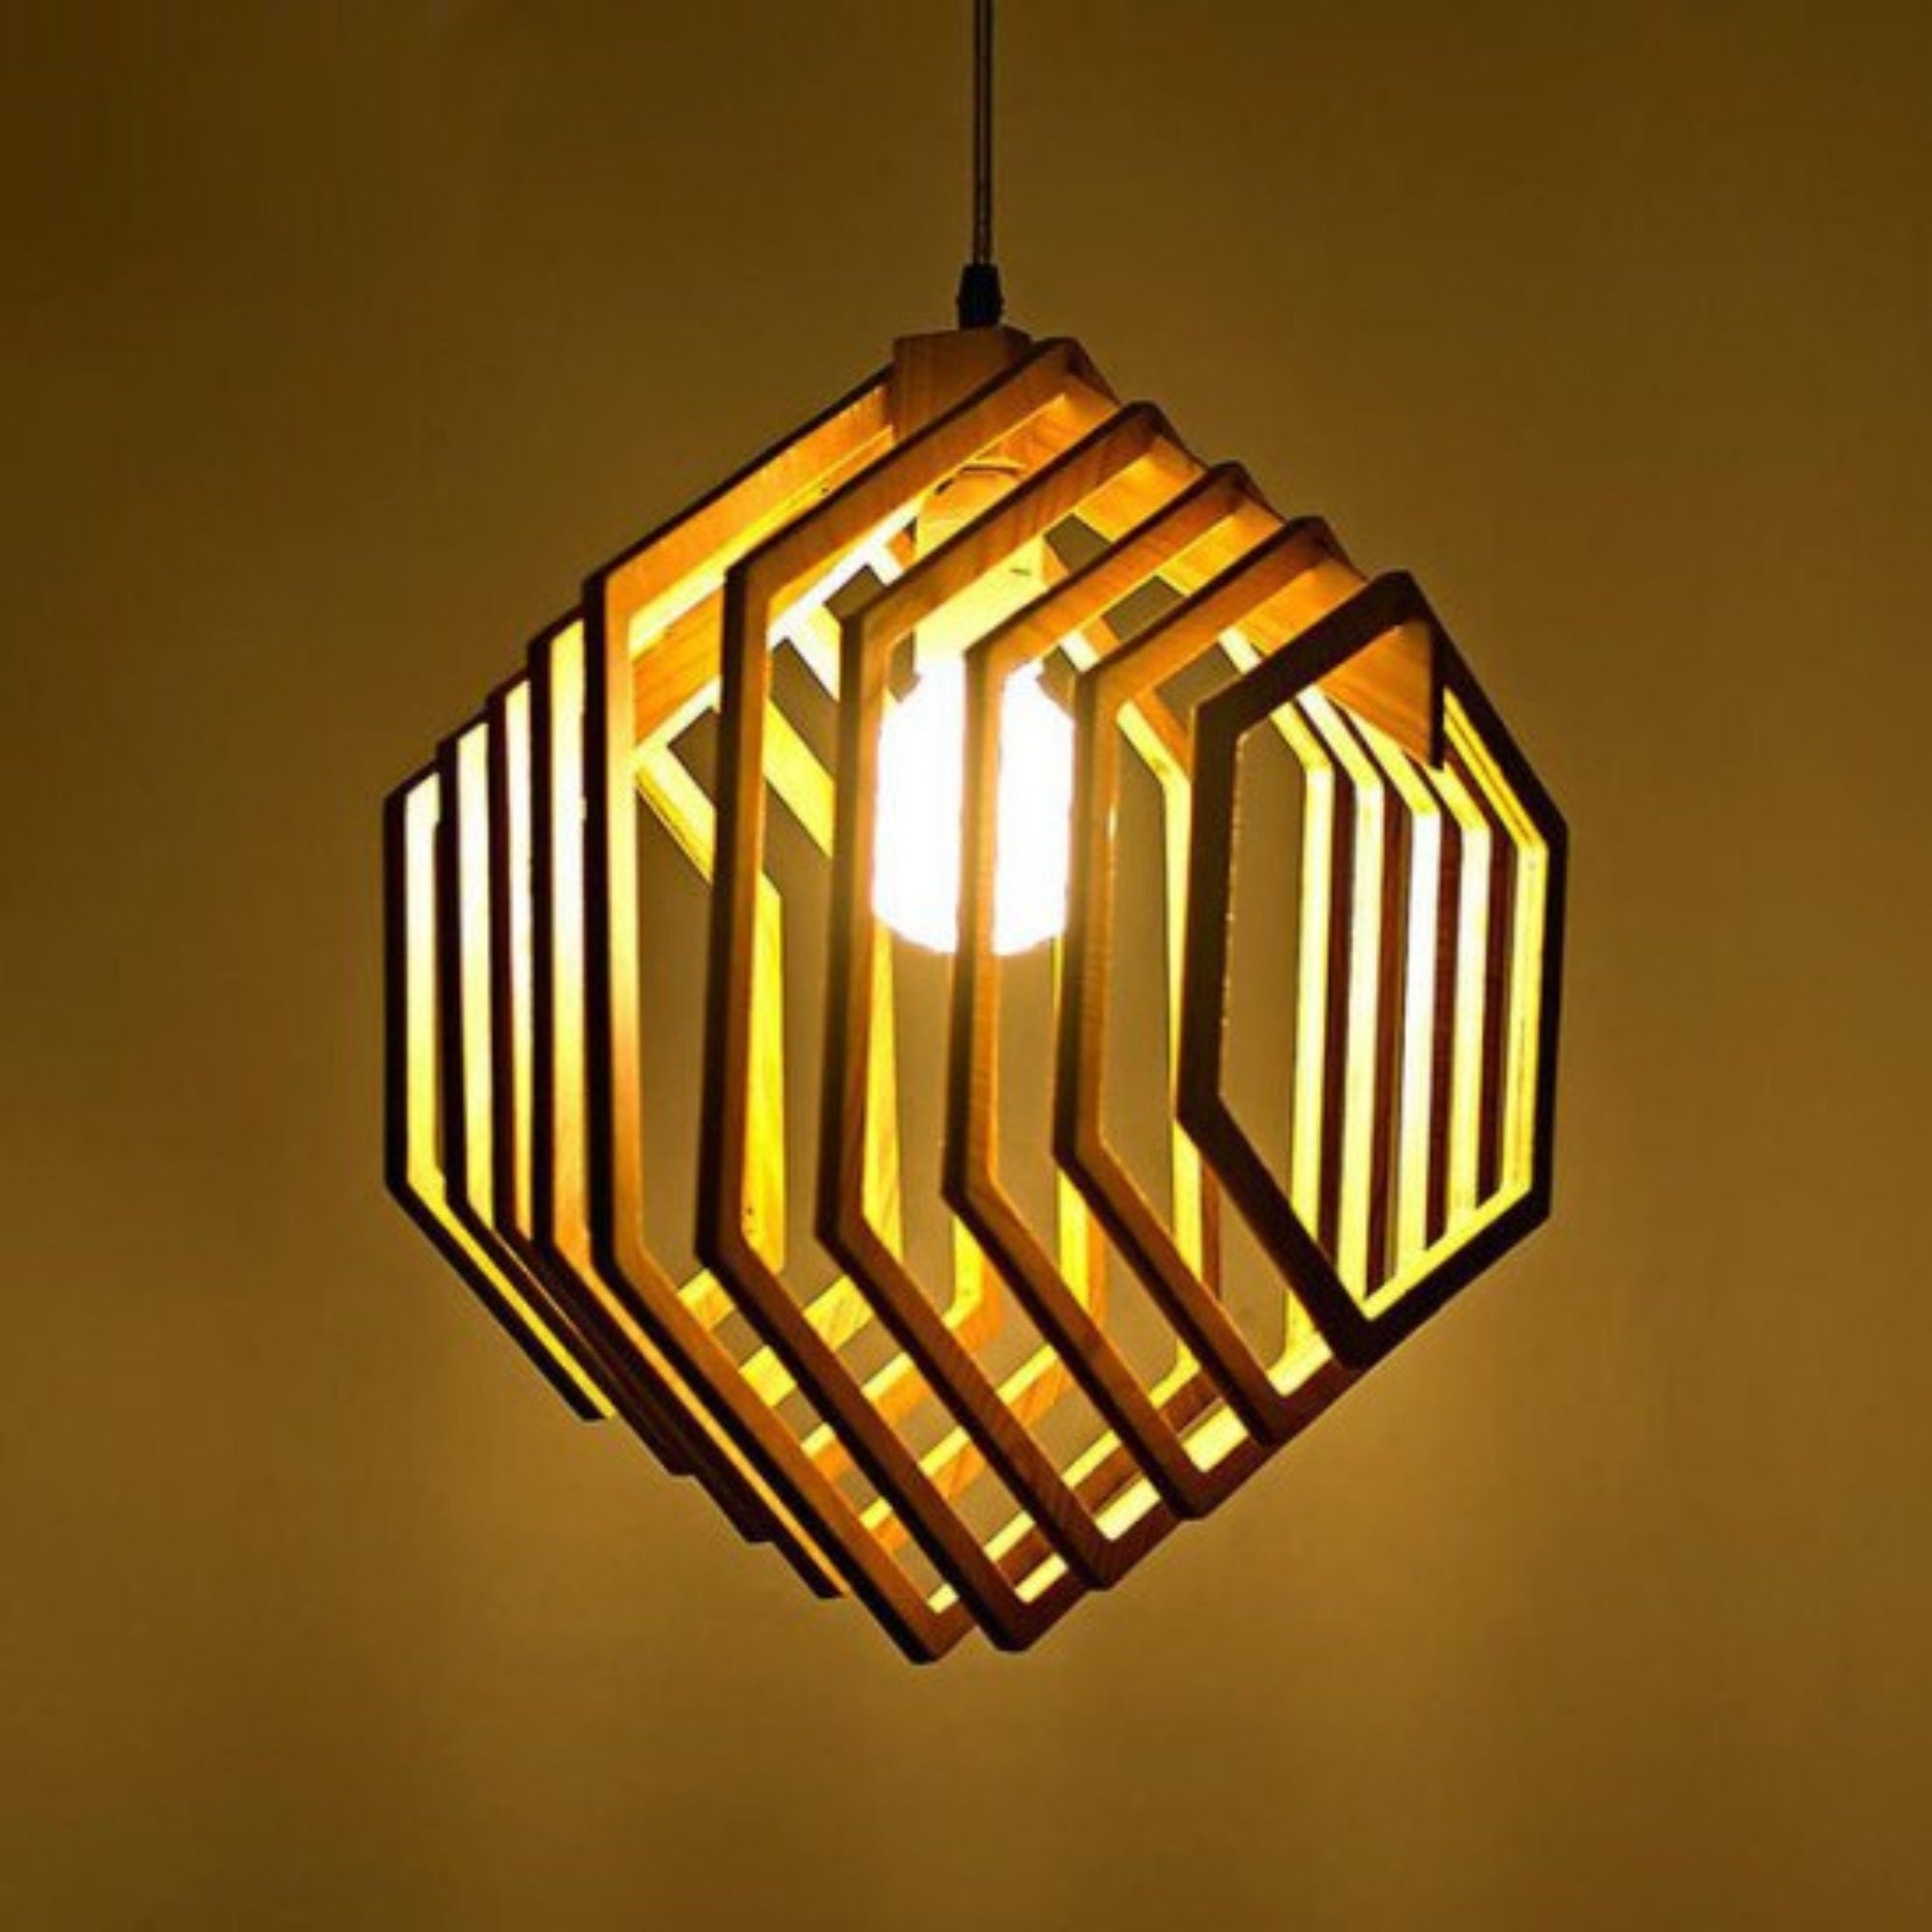 30 Wooden Lamp Design 3 Digital File for Laser Cut CNC 